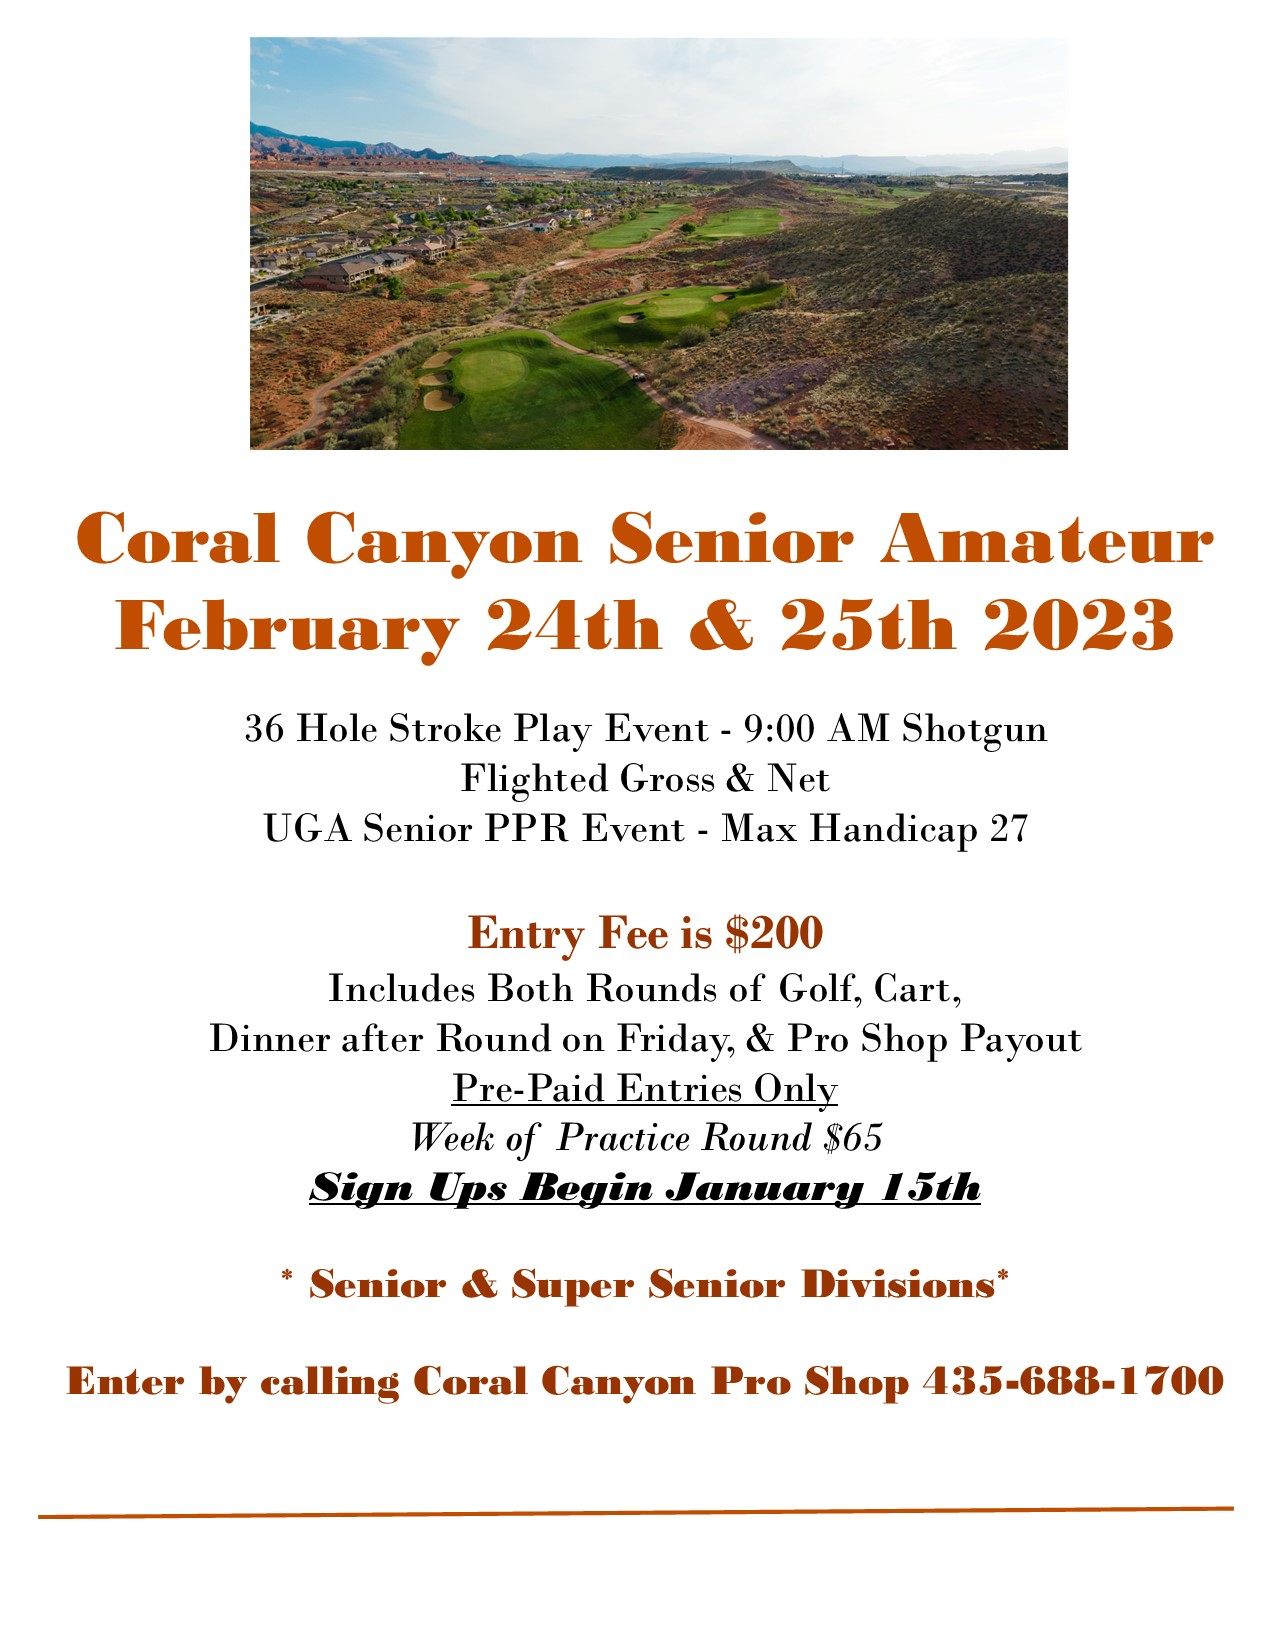 Coral Canyon Senior Amateur Tournament Flyer 2023